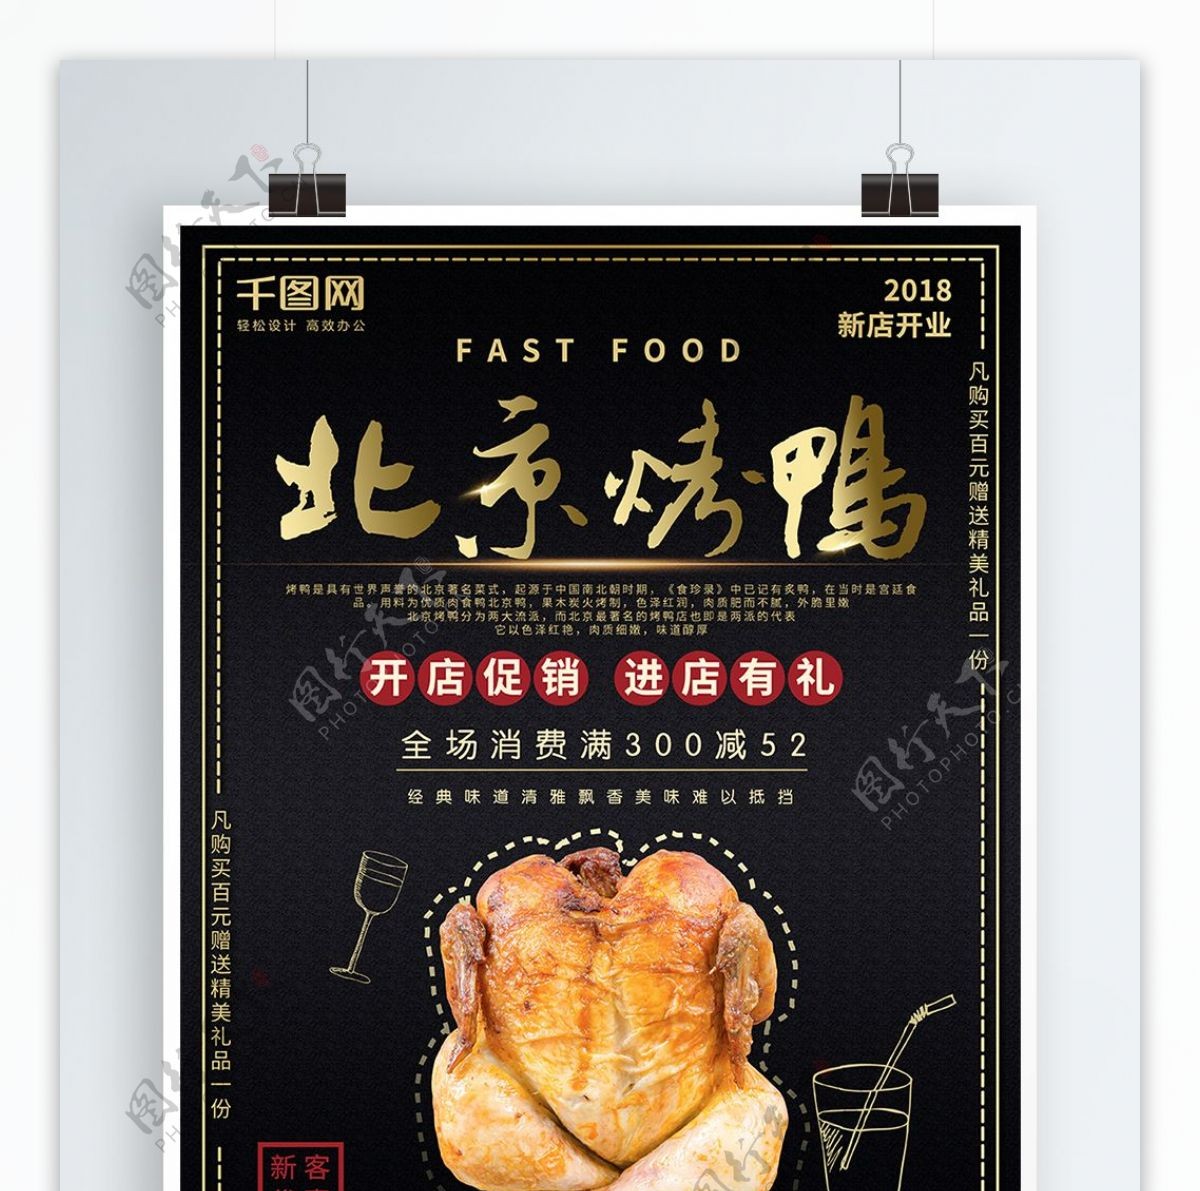 黑色大金北京烤鸭餐饮促销海报